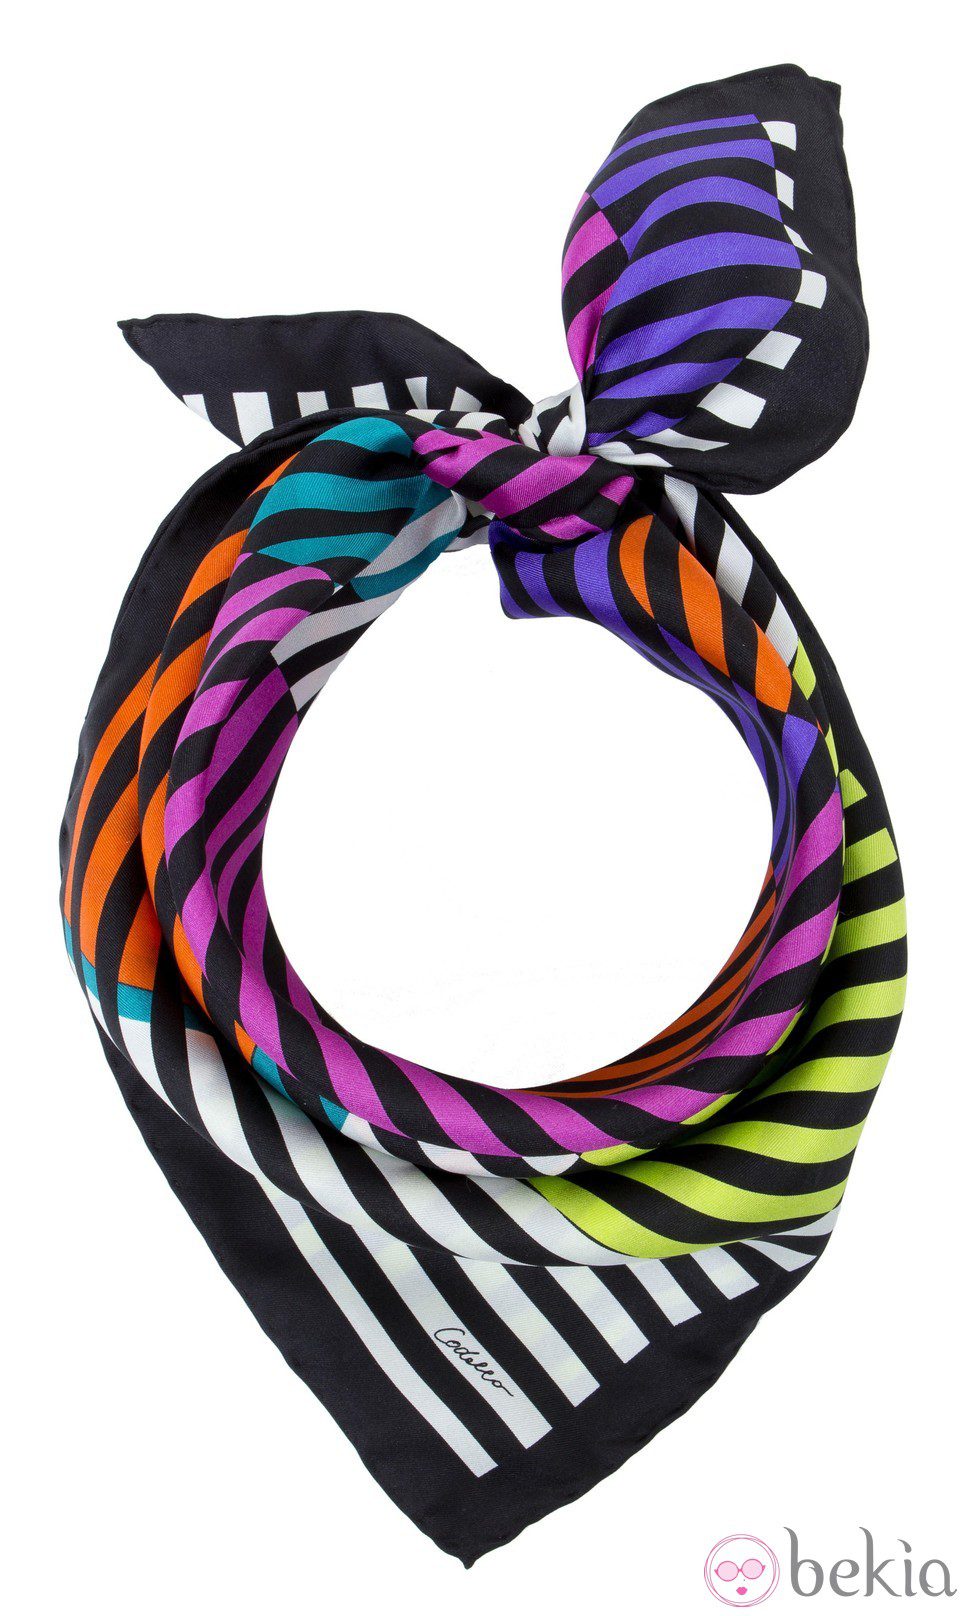 Pañuelo de rayas de la nueva colección Codello para este verano 2012